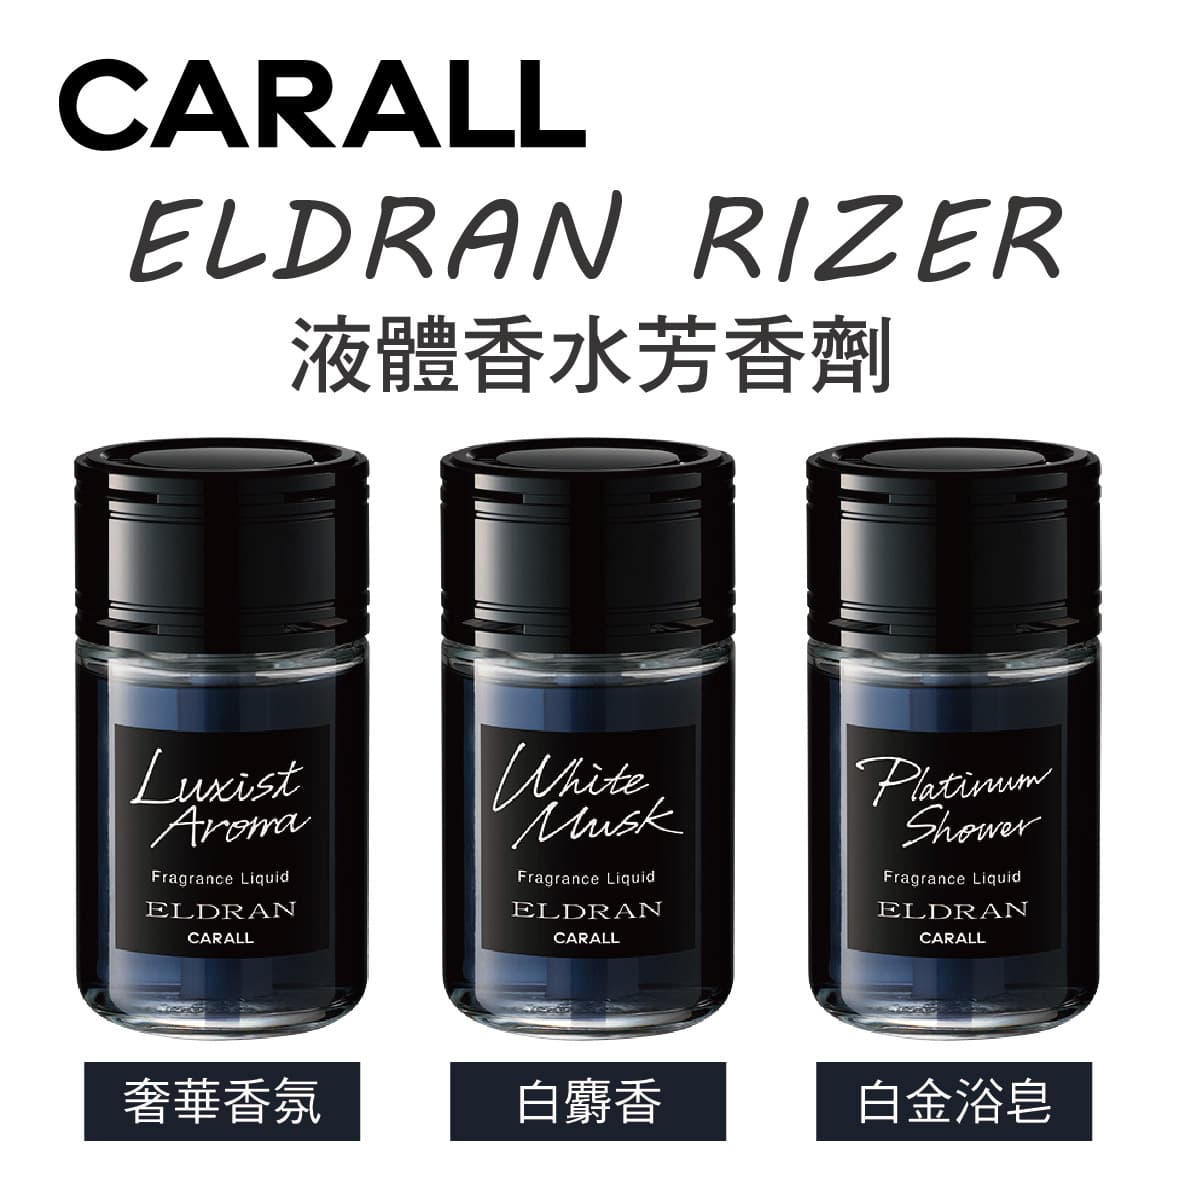 真便宜 CARALL ELDRAN RIZER 大容量液體香水芳香劑200ml